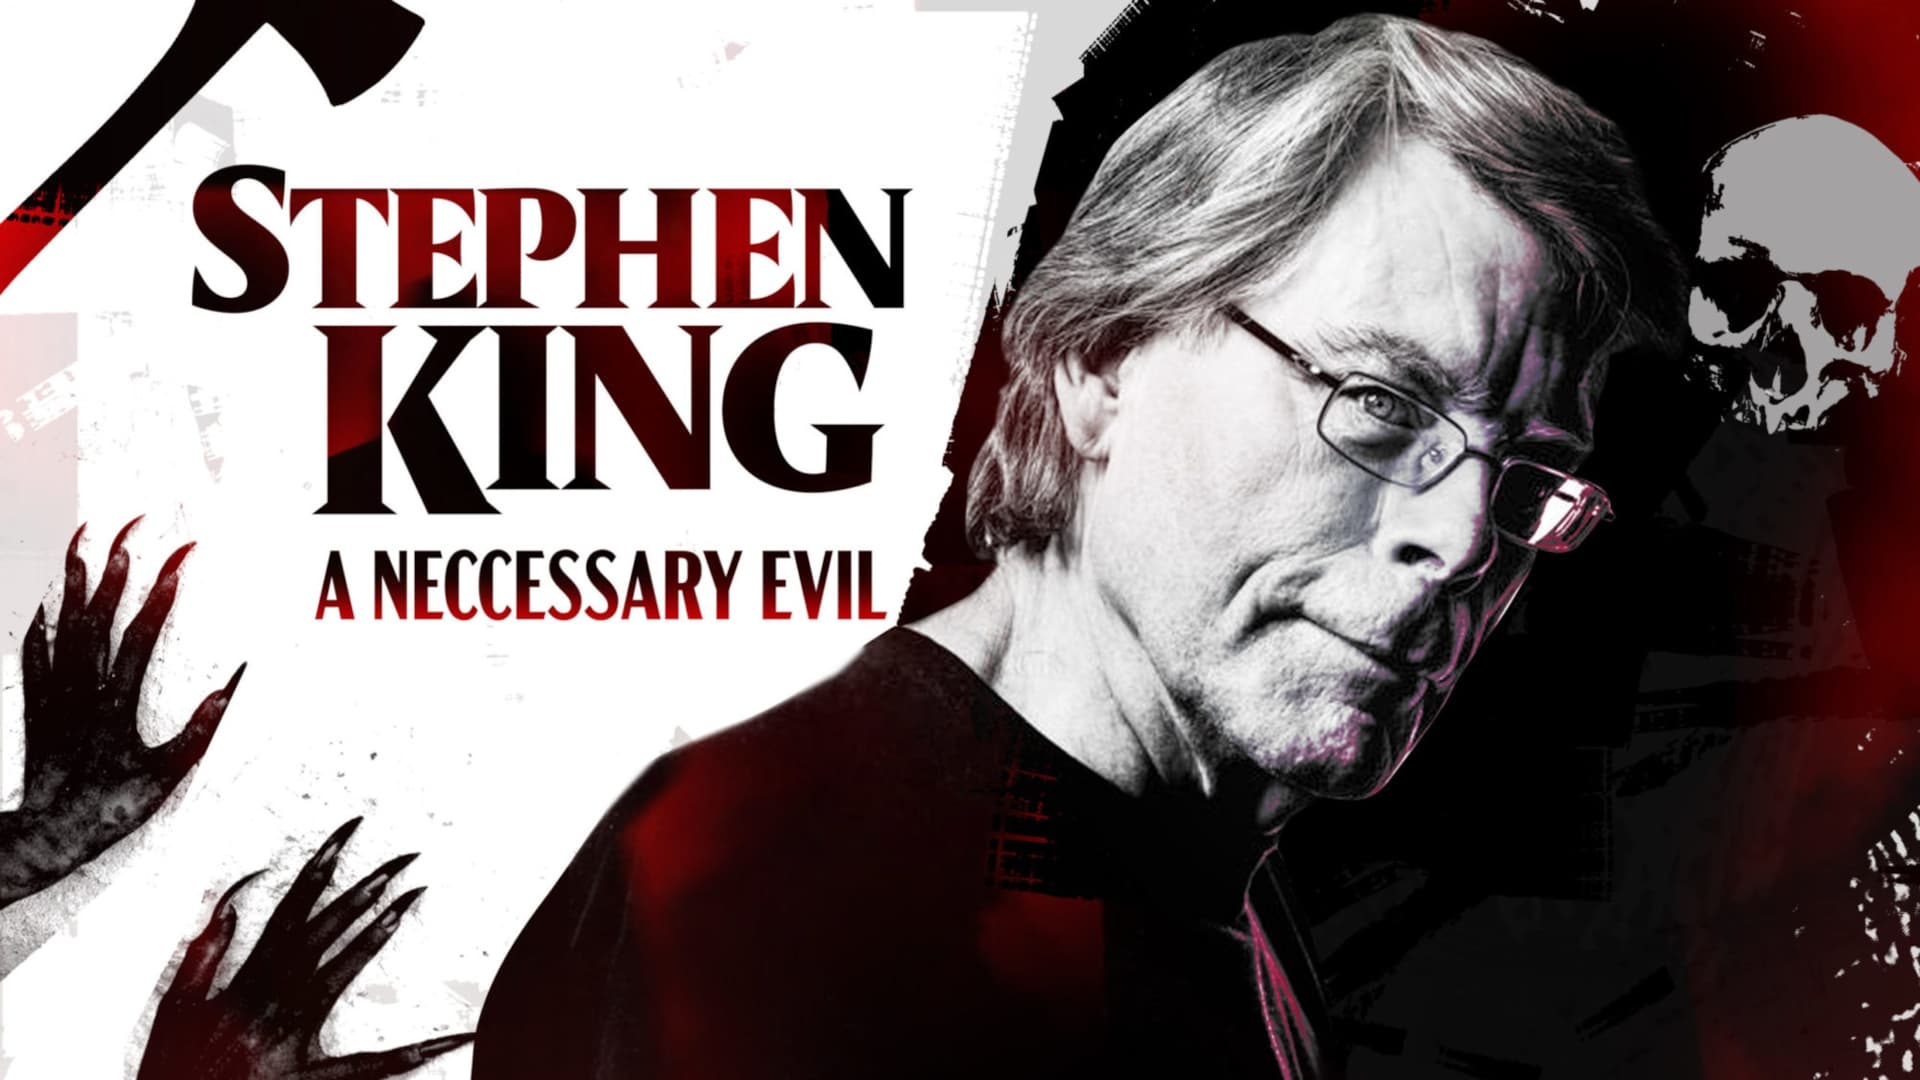 Stephen King : le mal nécessaire (2020)